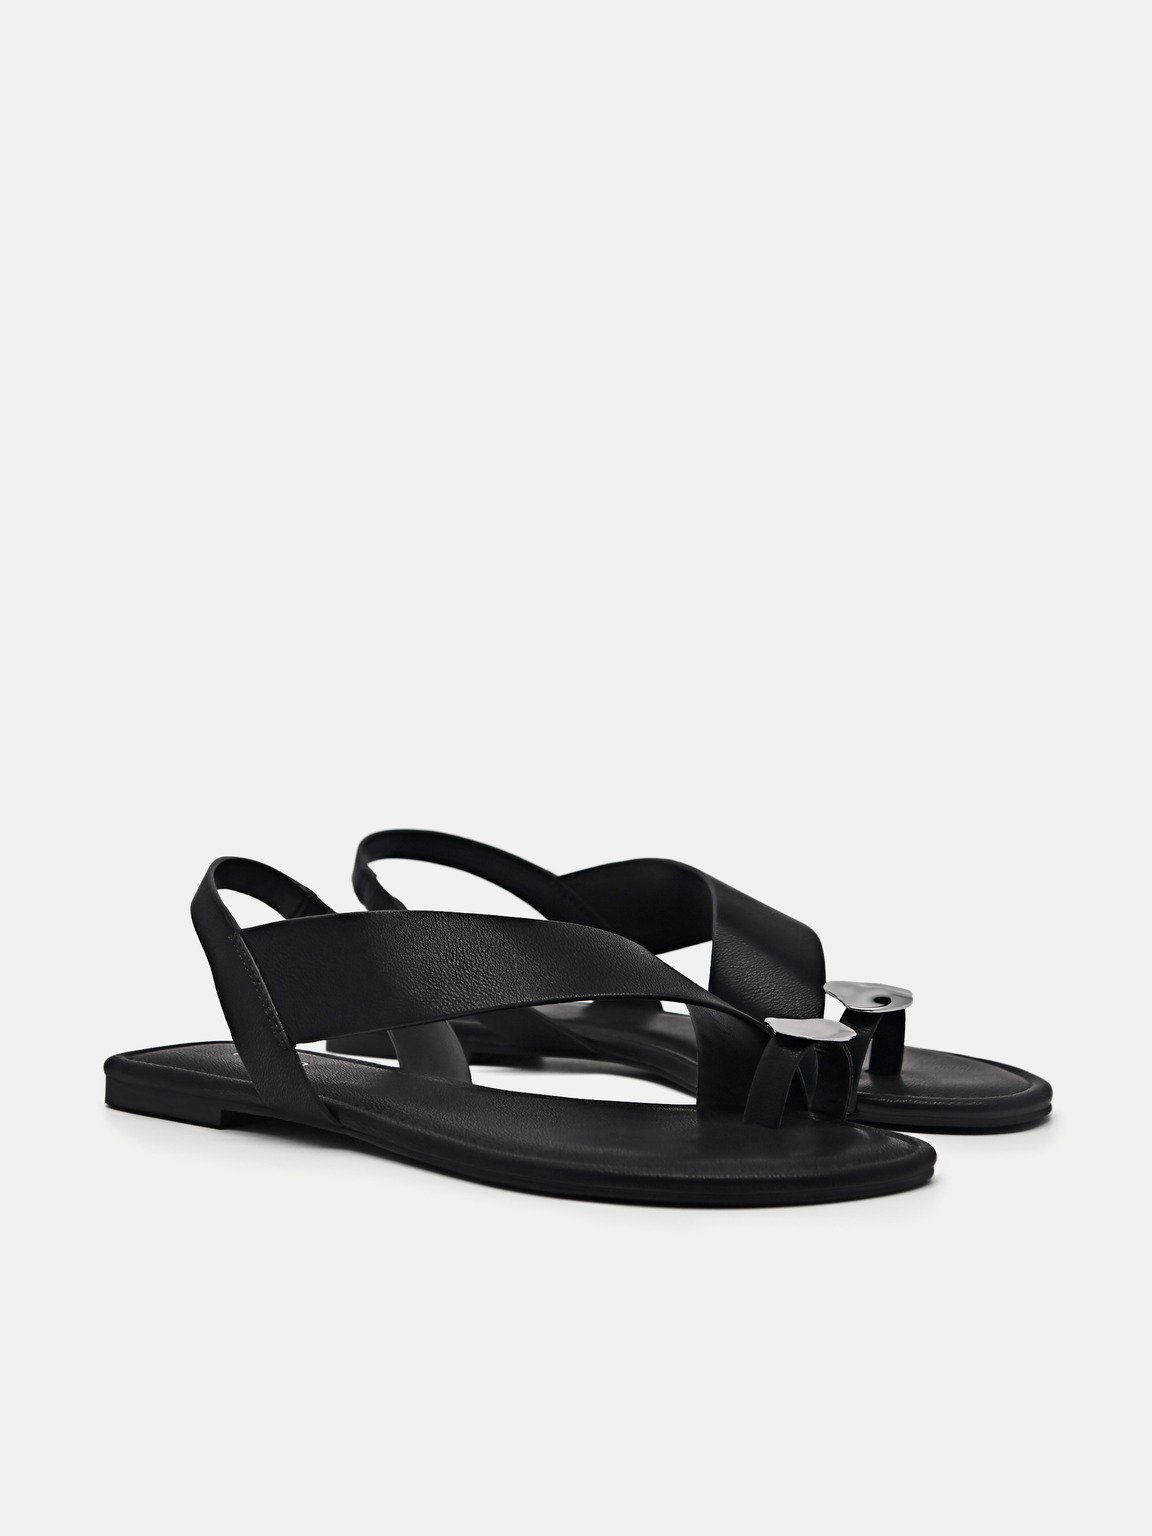 Alexis Toe Loop Sandals, Black